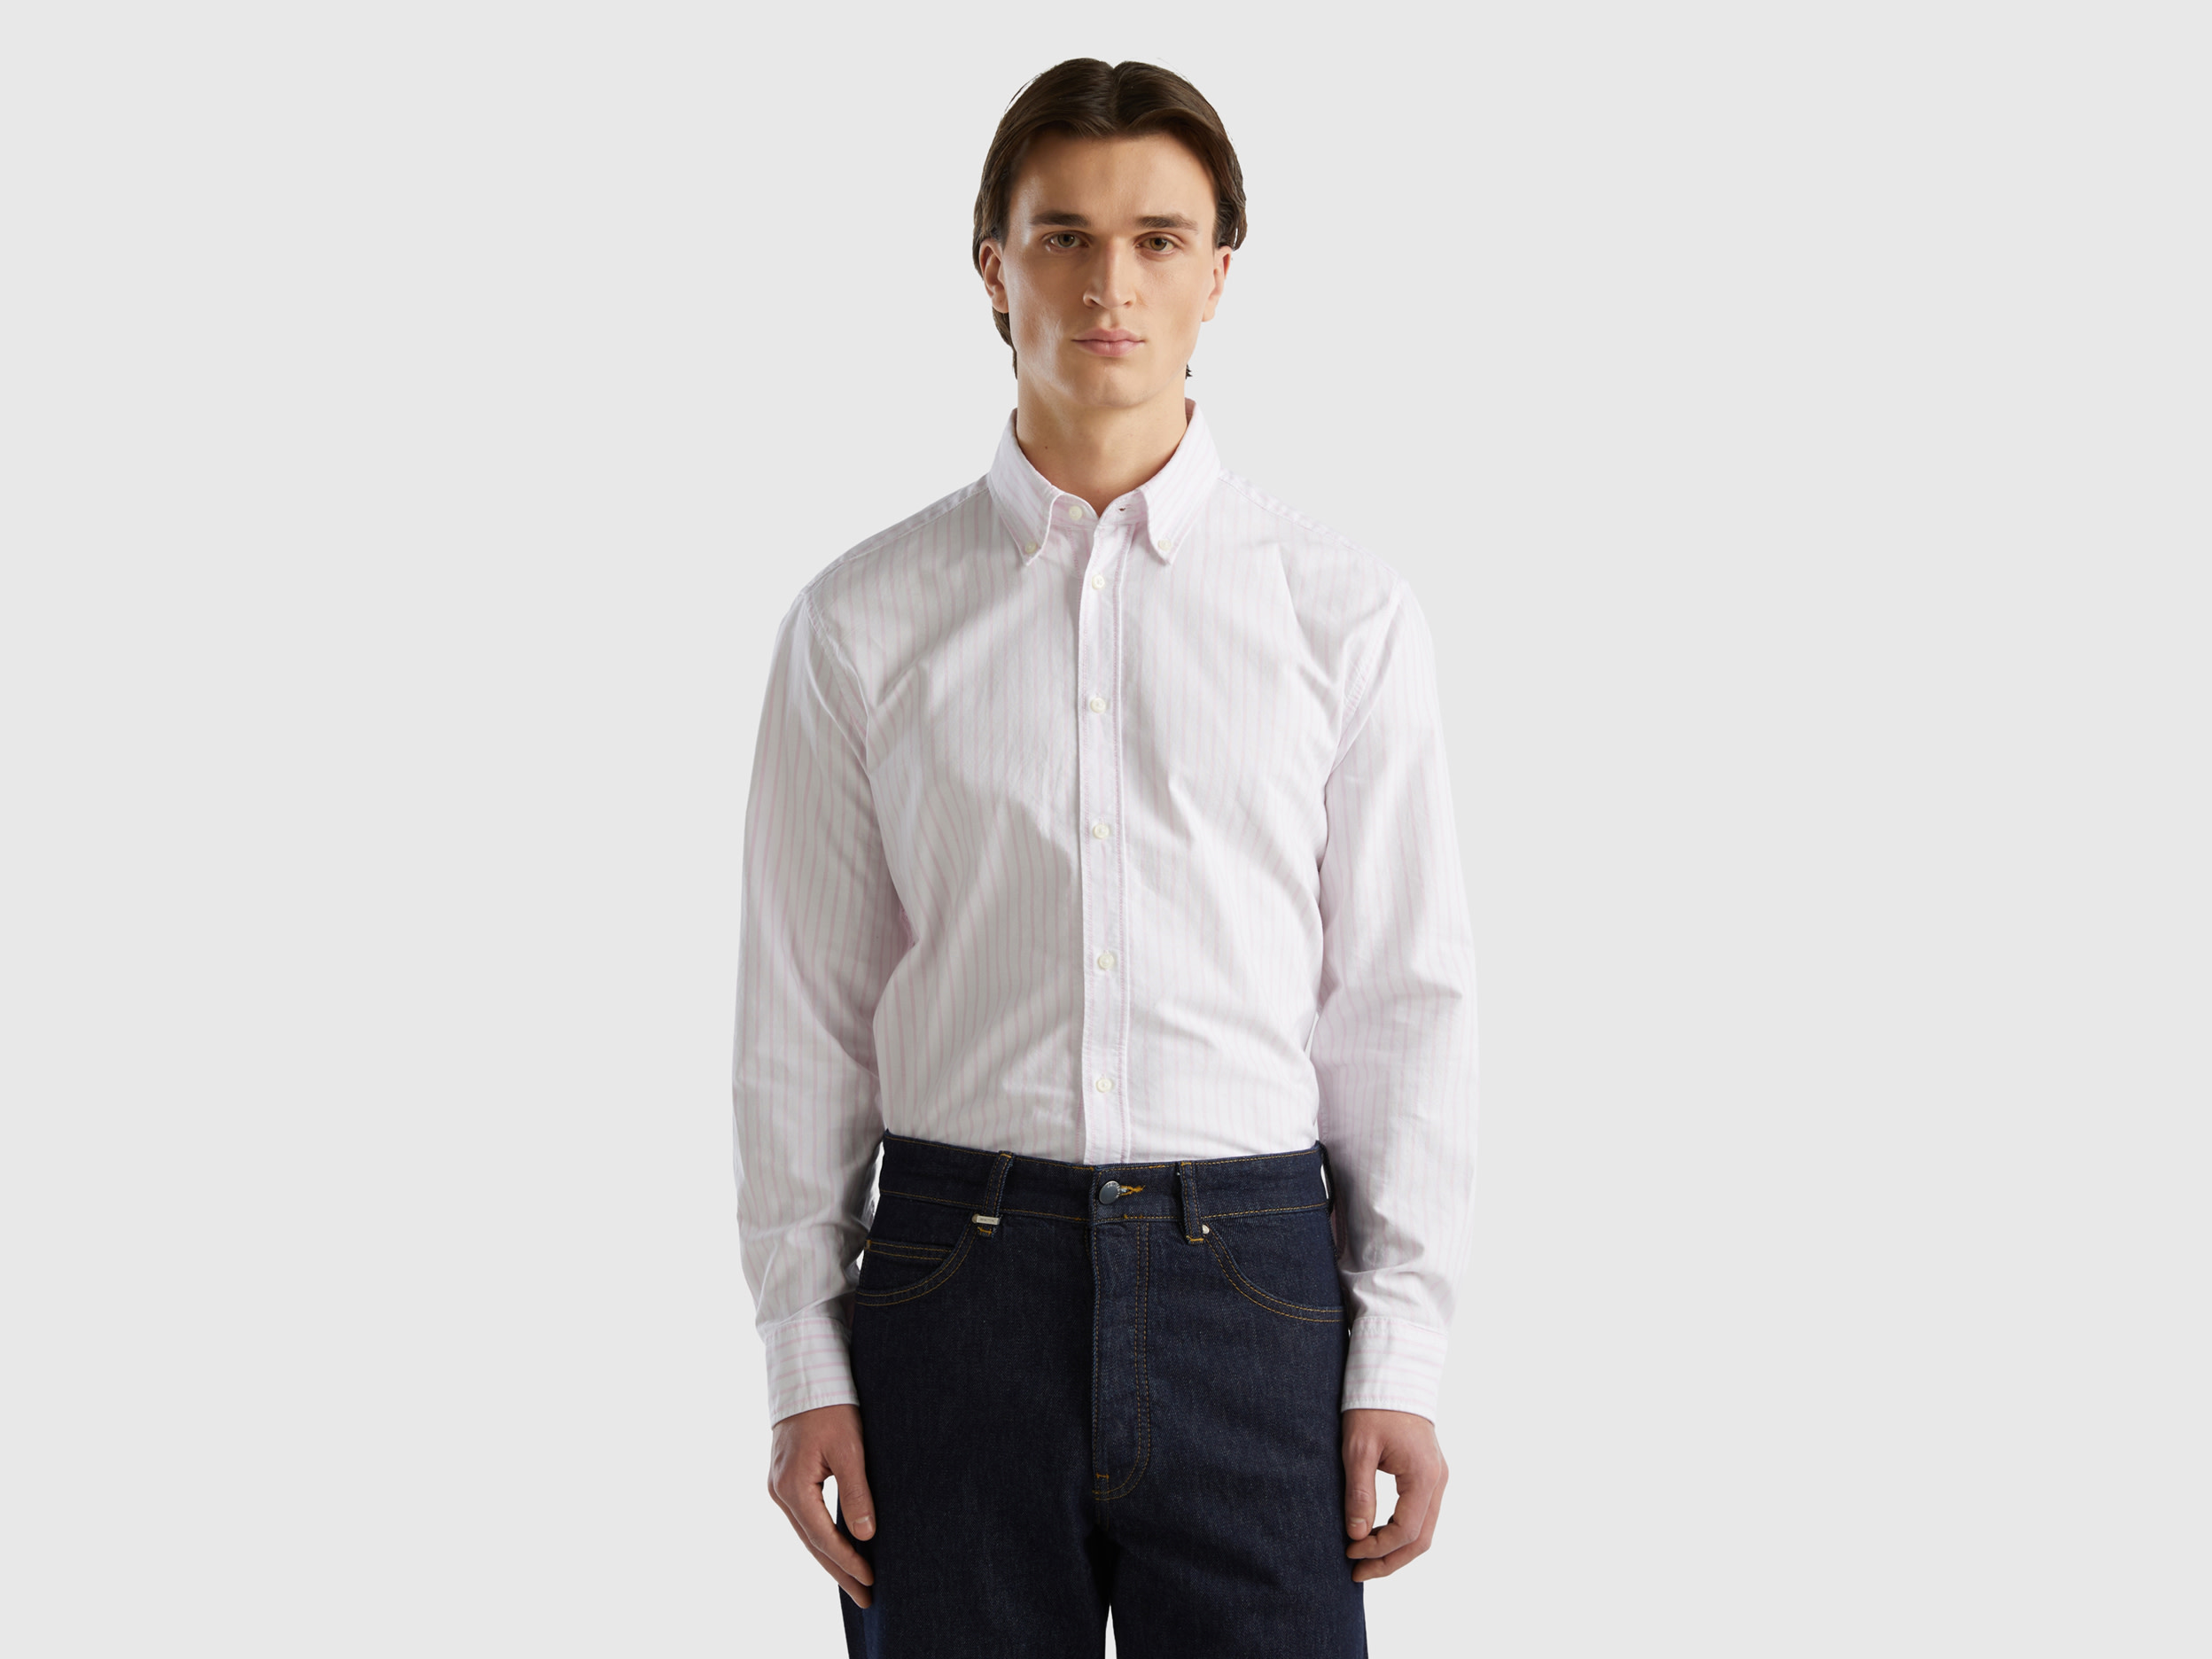 Benetton, 100% Cotton Striped Shirt, size XXL, White, Men